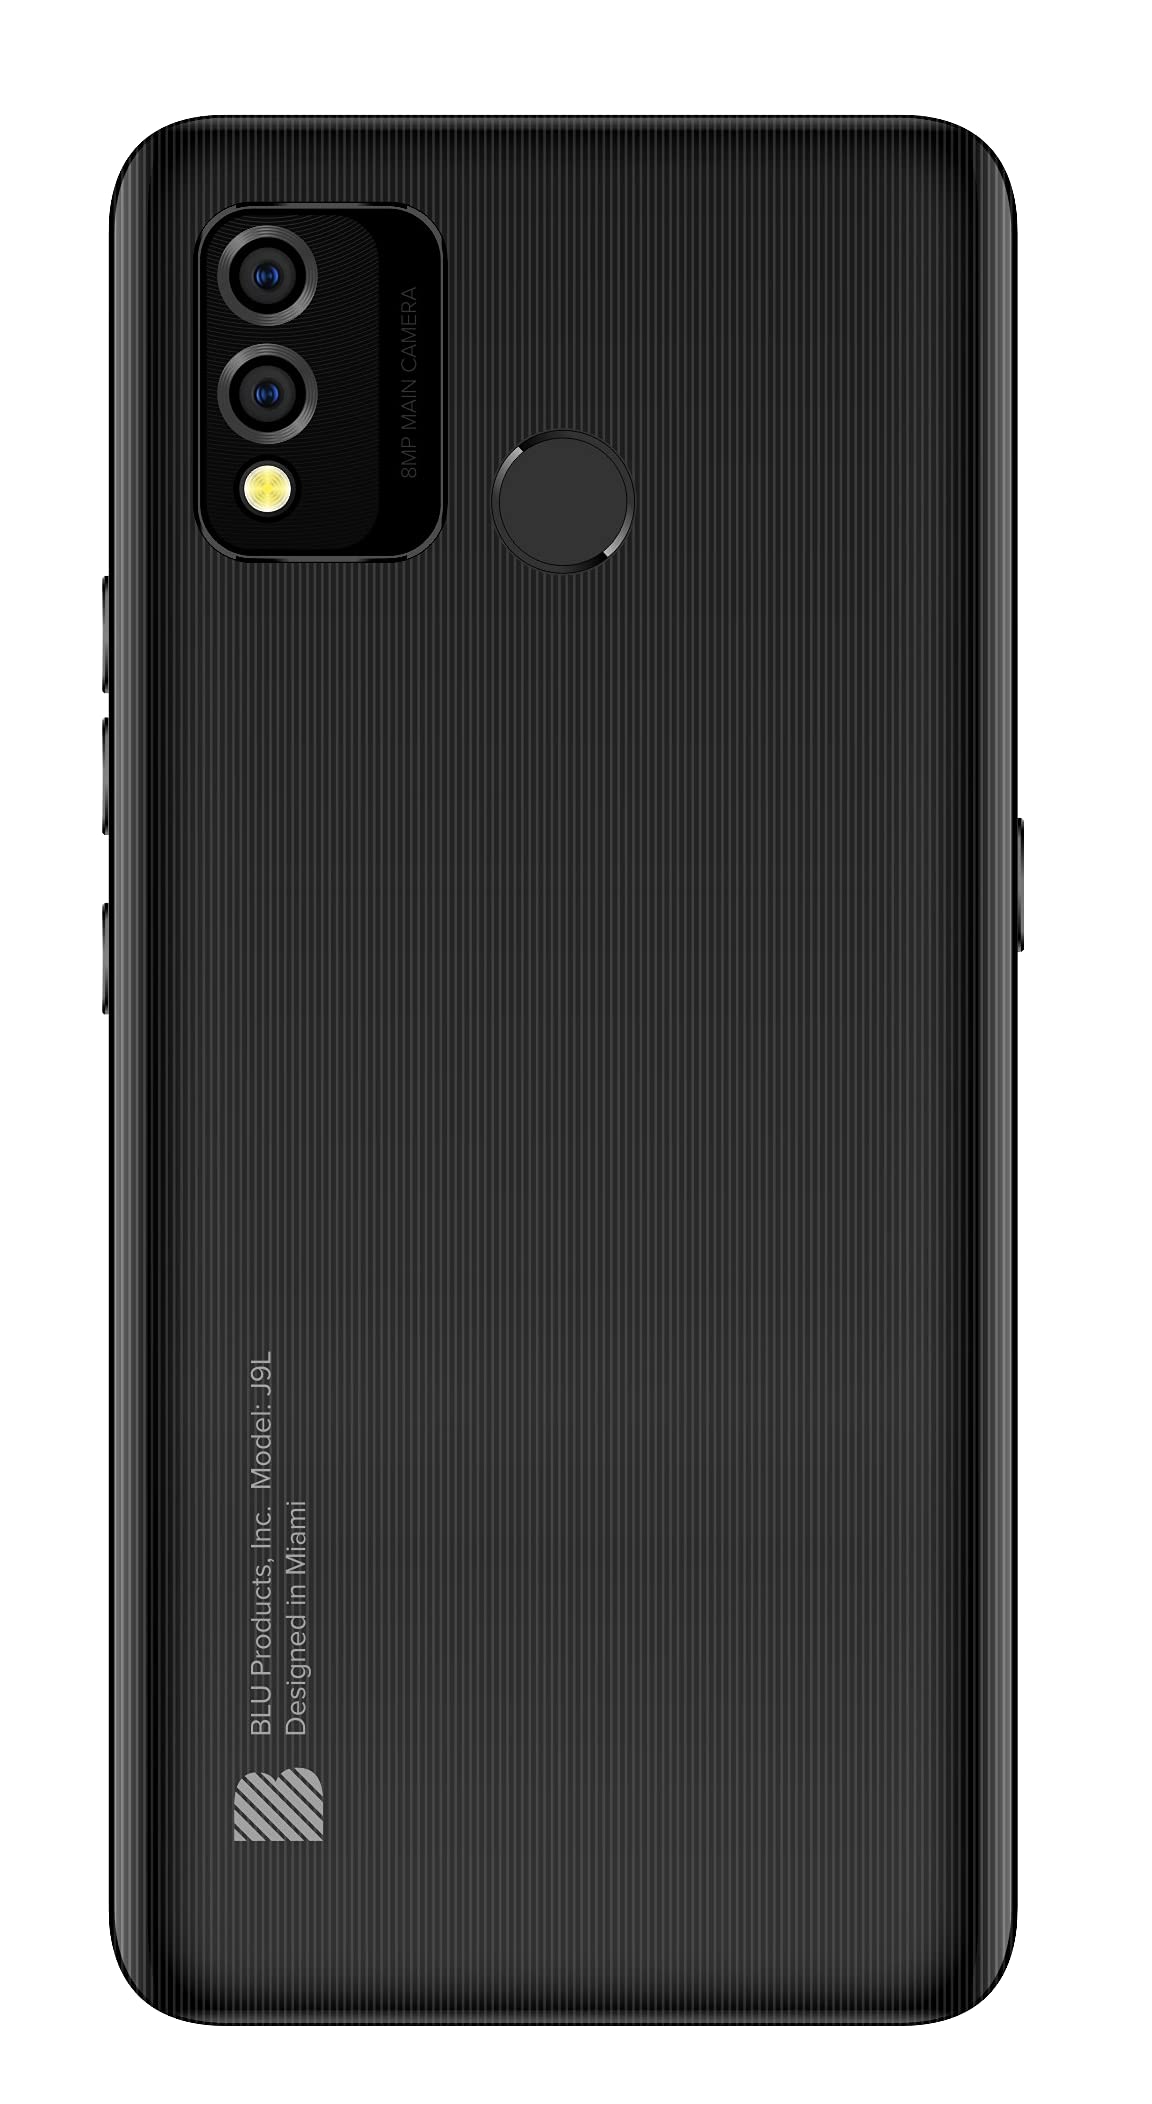 BLU J9L J0090WW 32GB Dual Sim GSM Unlocked Android Smartphone - Black